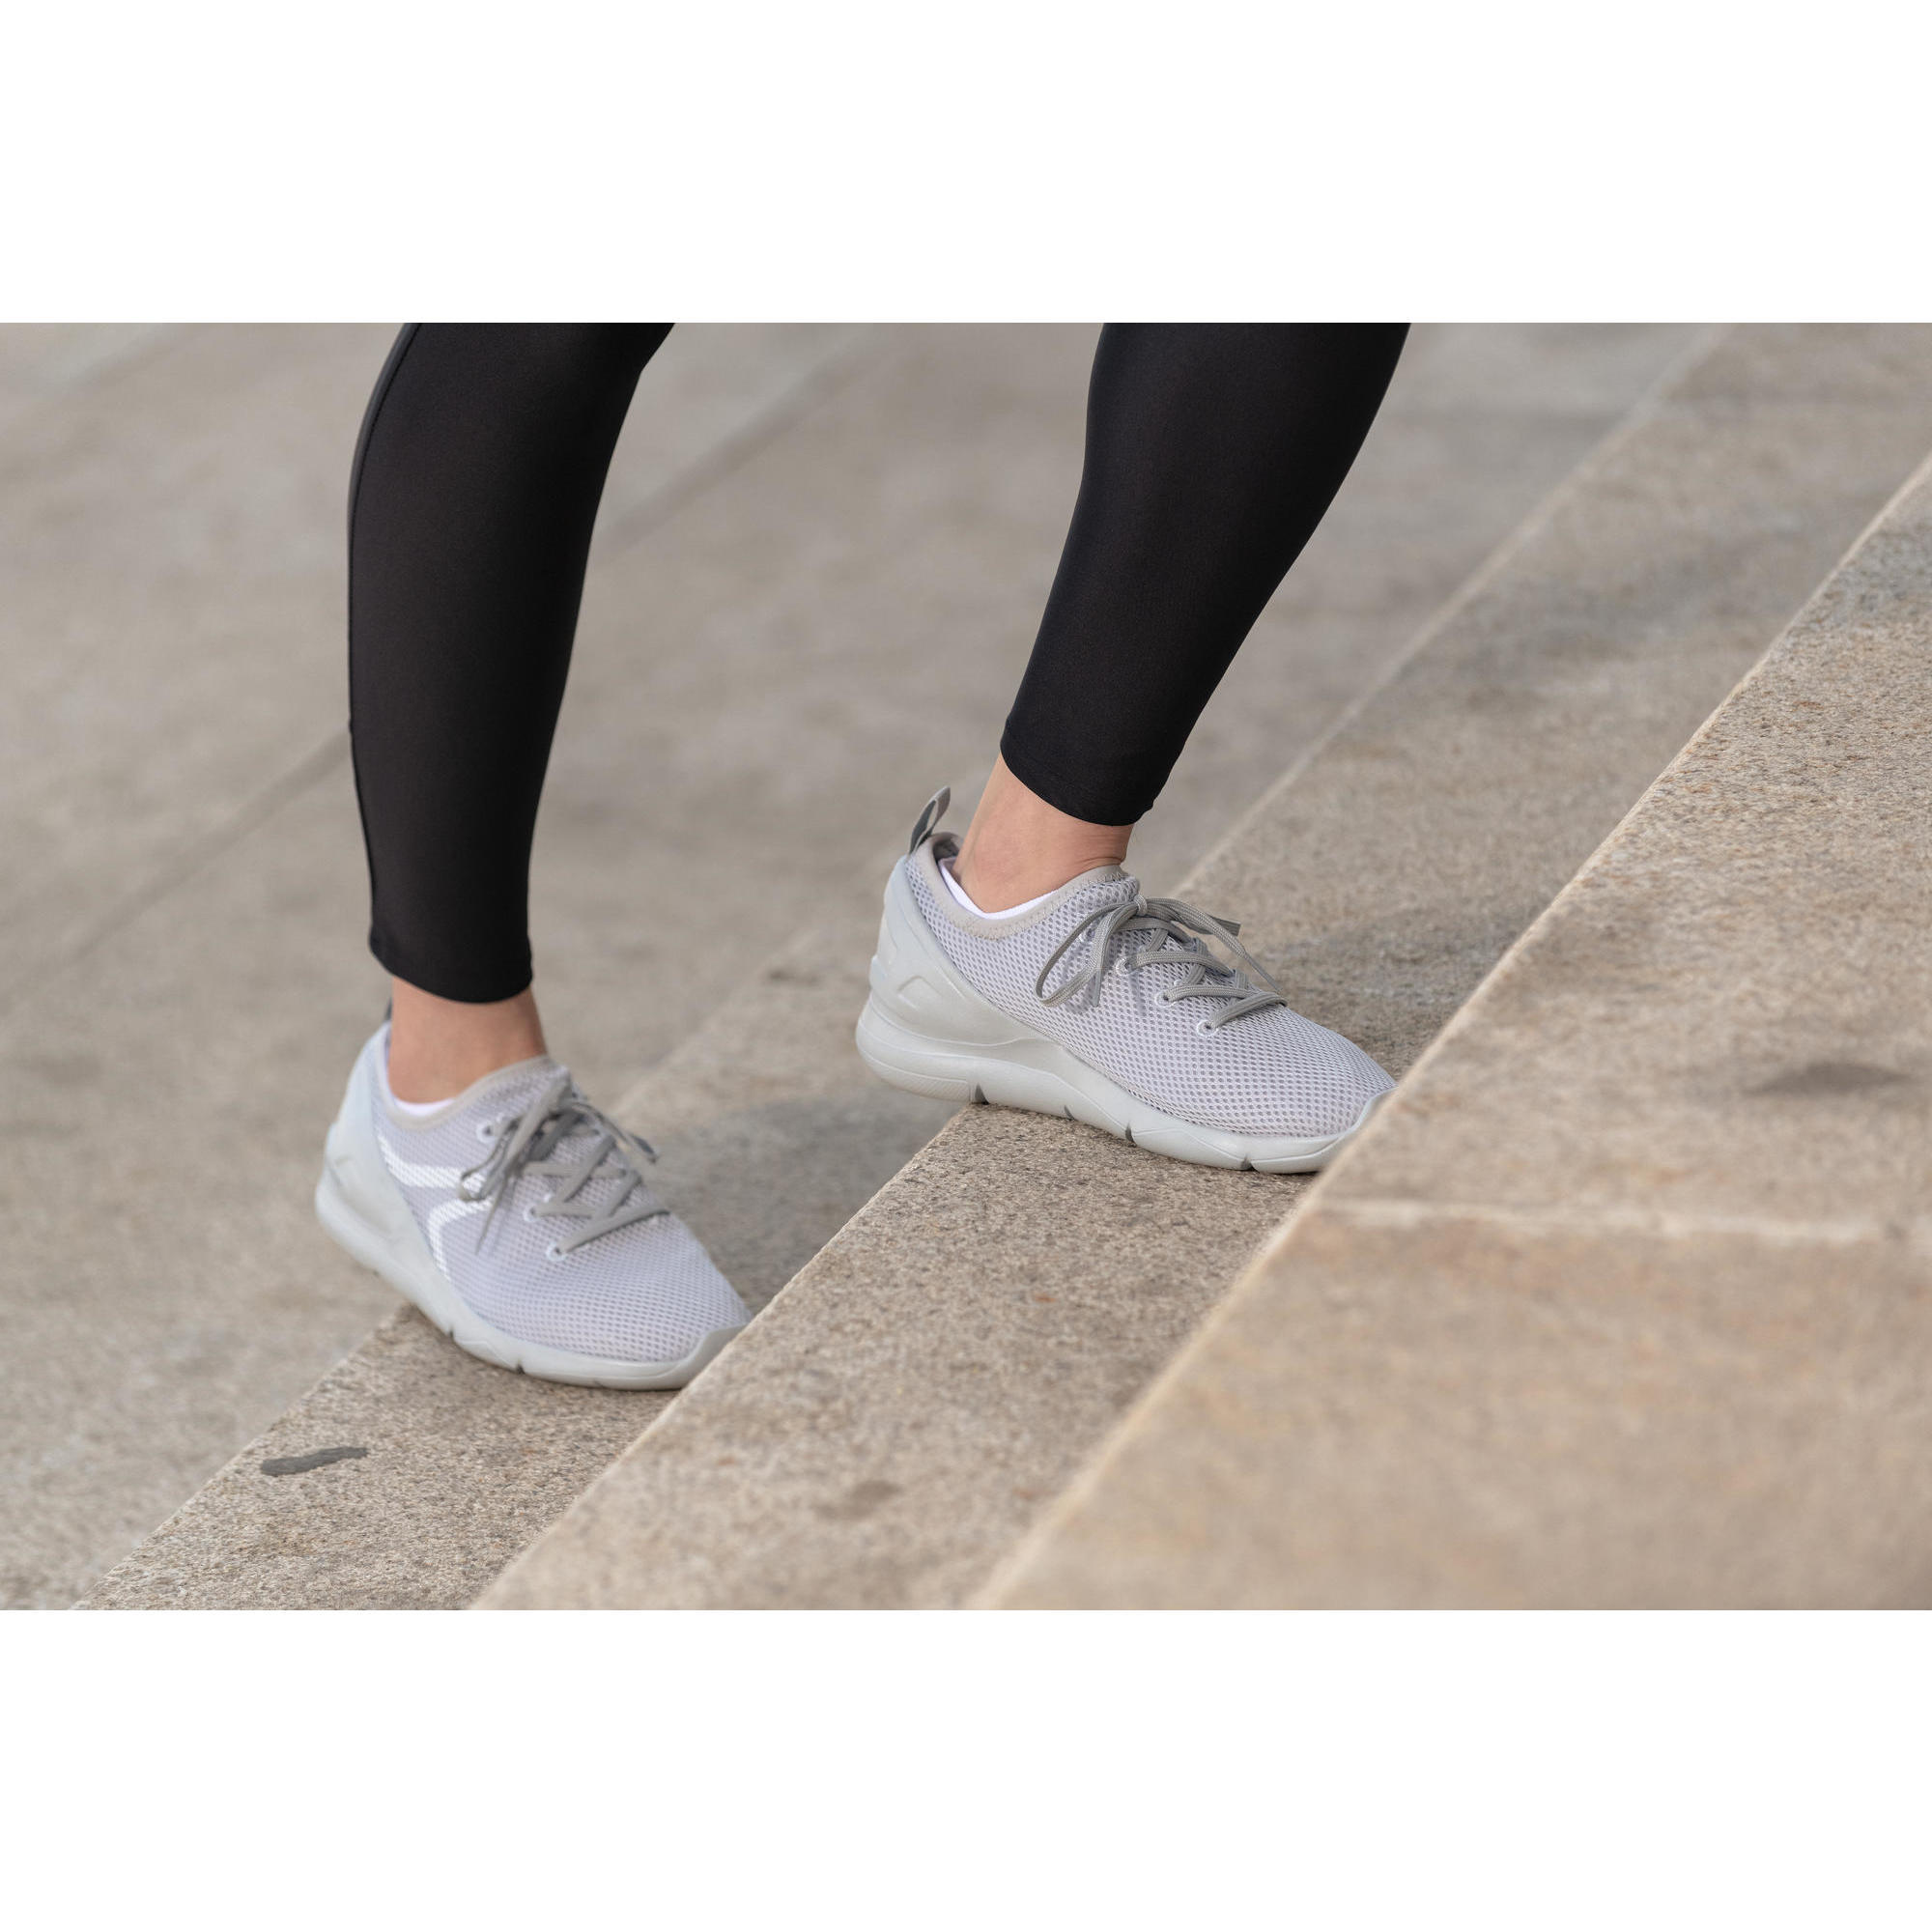 PW 100 Women's Fitness Walking Shoes 